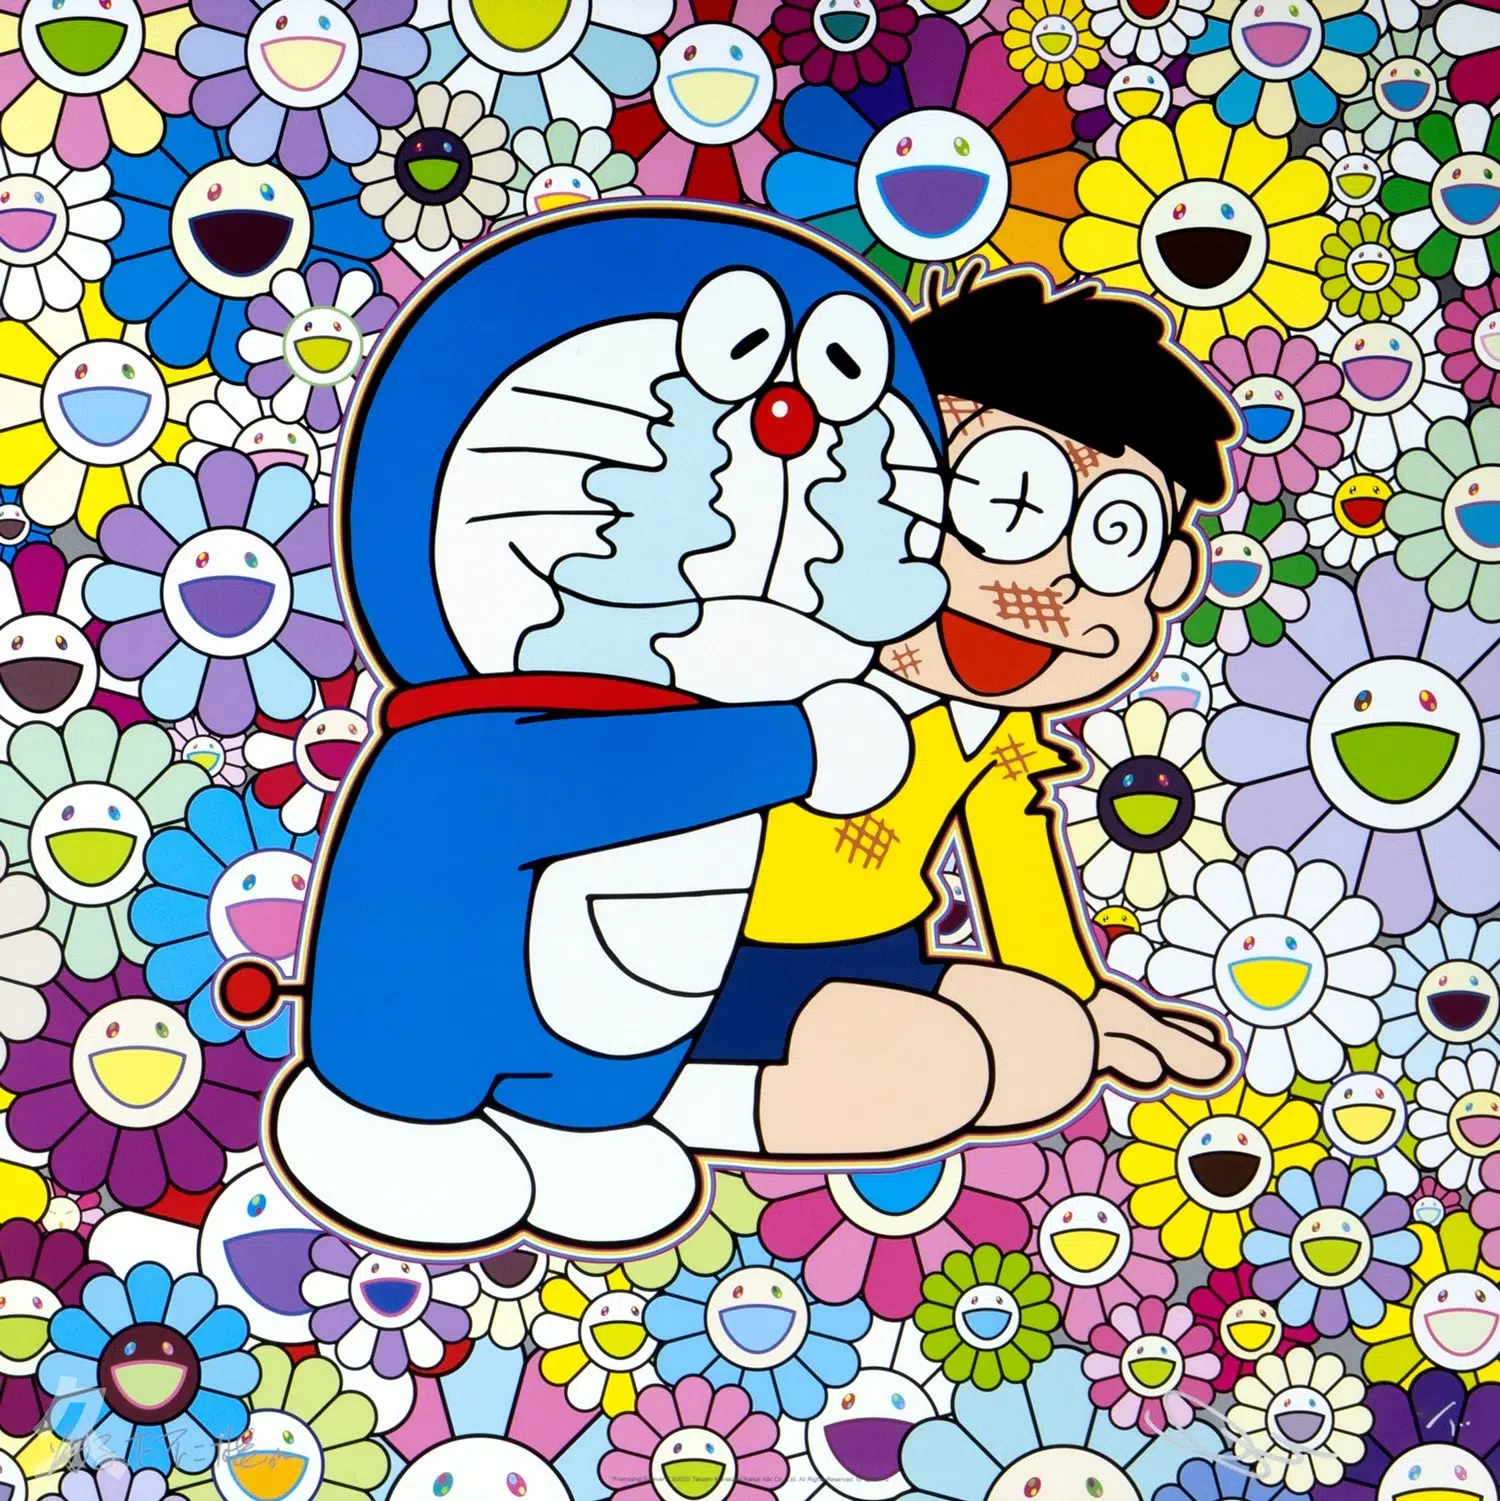 Takashi Murakami. Superflat doraemon